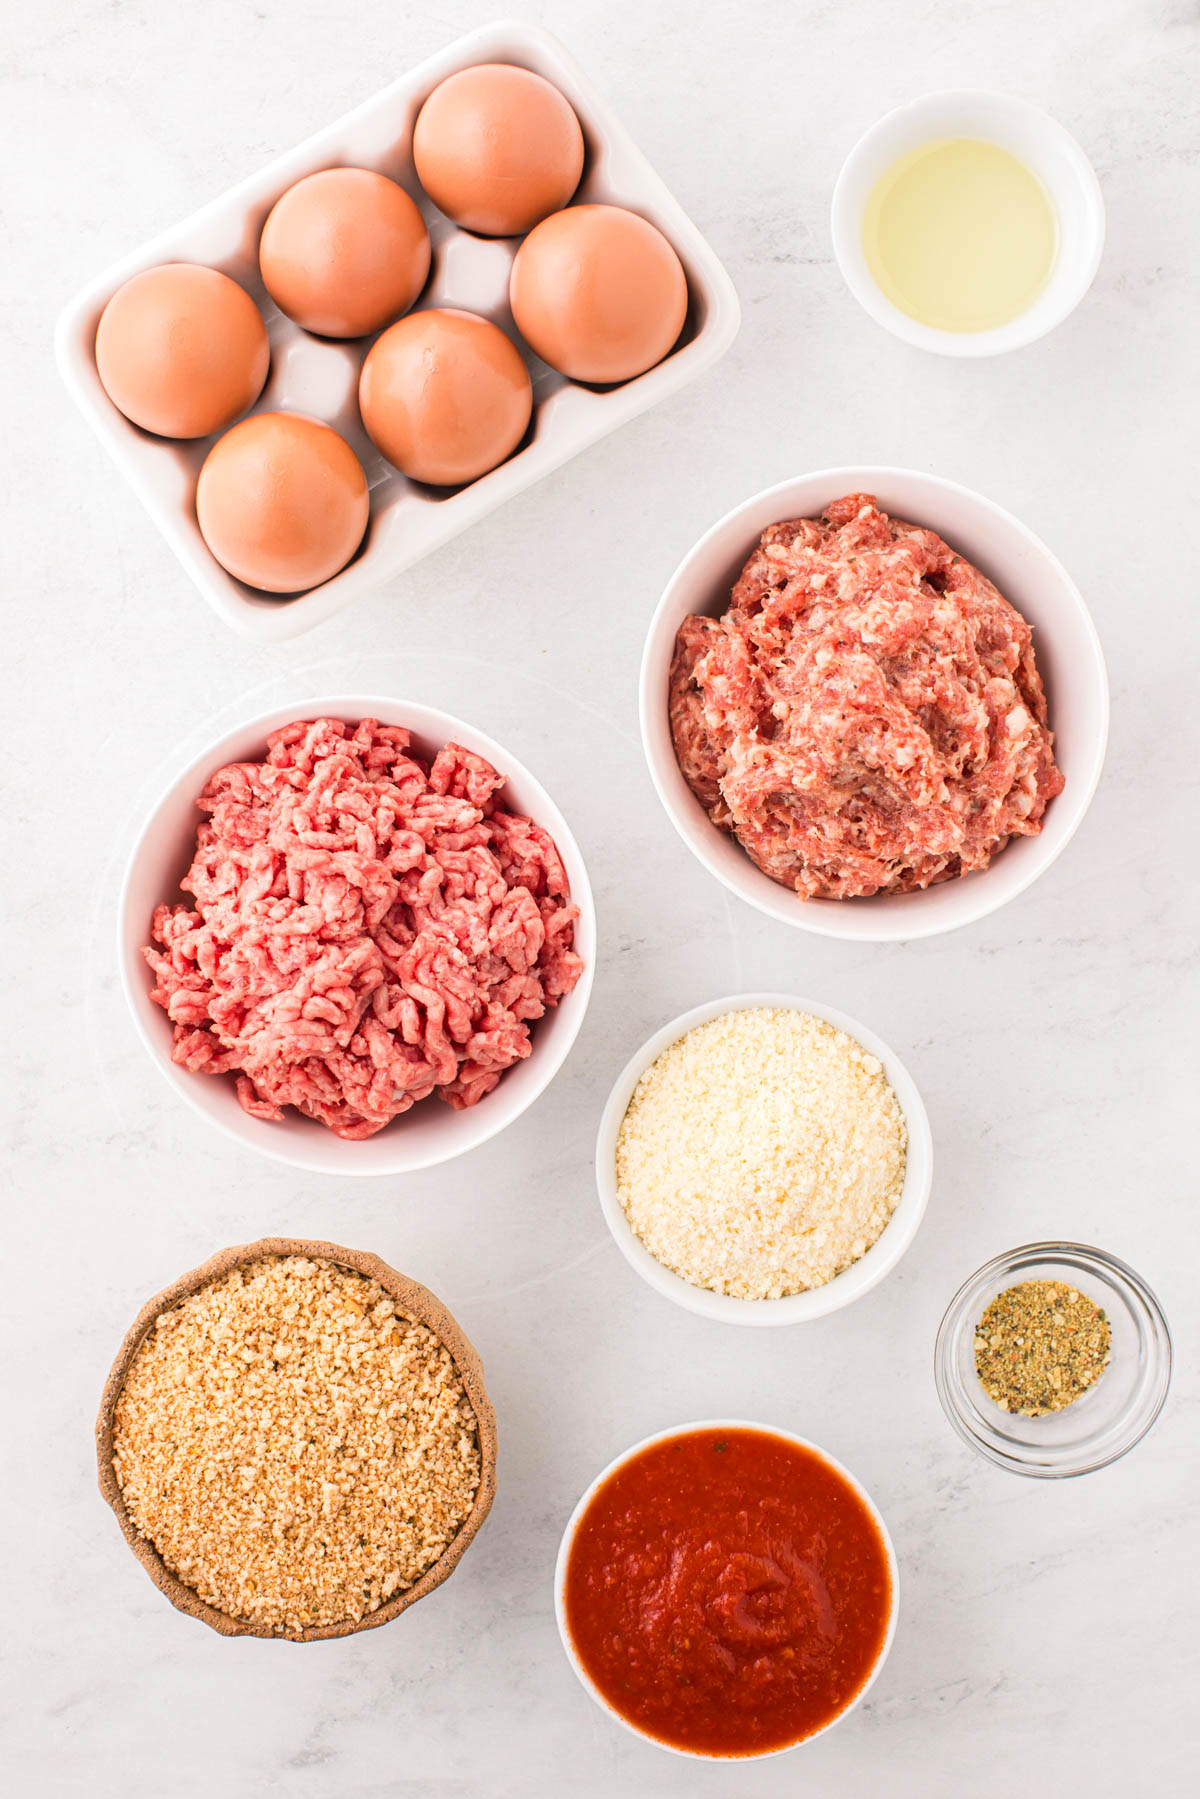 Ingredients for instant pot meatballs.